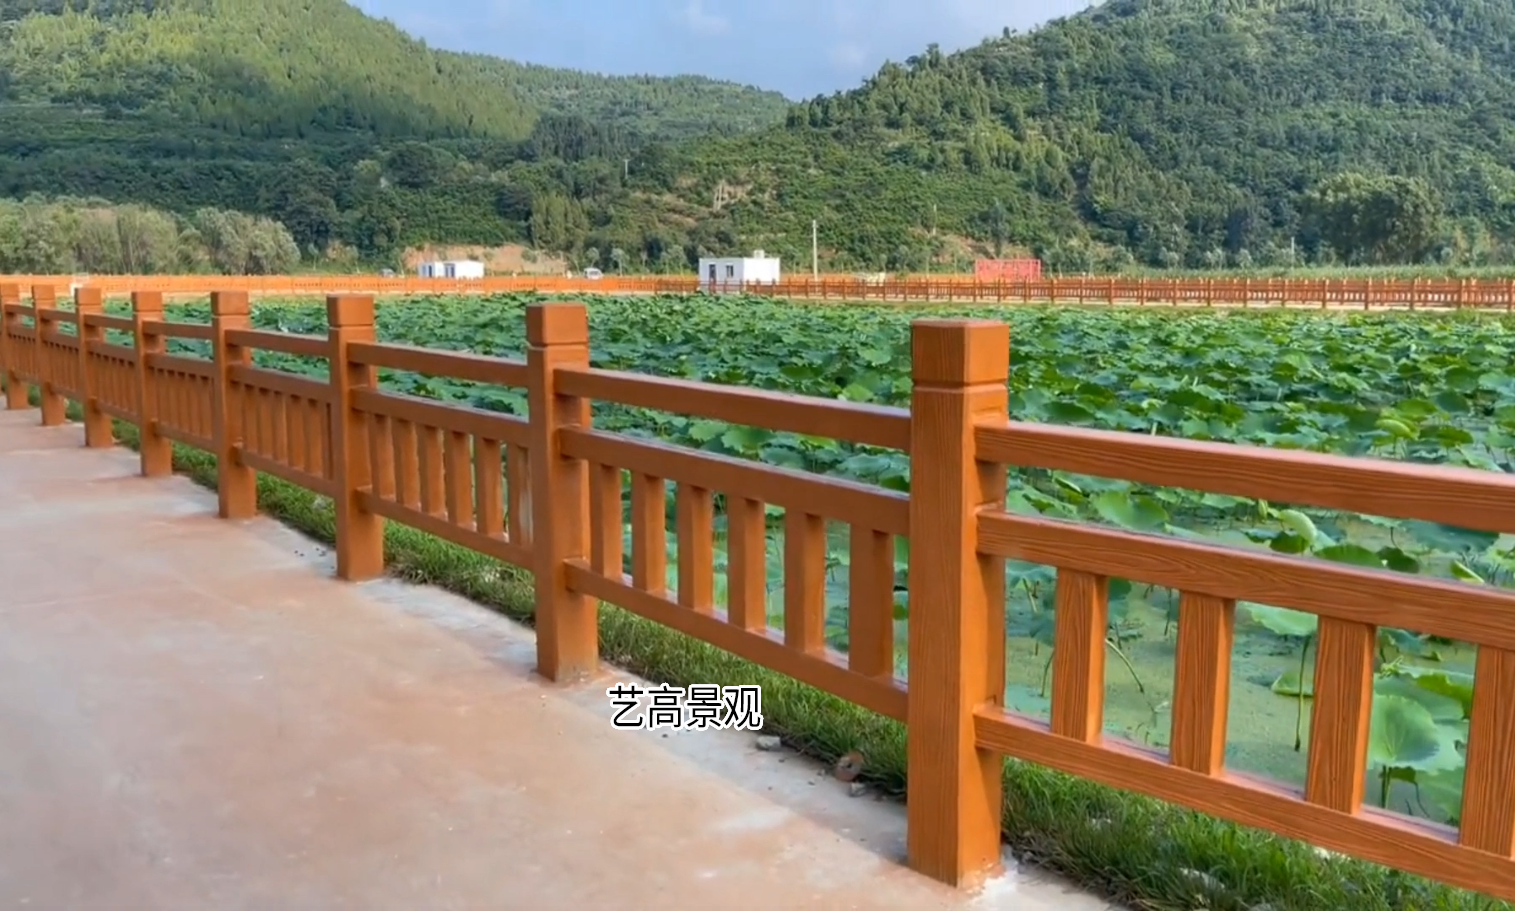 广东仿木护栏景观工程报价 广州水泥仿木栏杆厂家价格多少钱一米